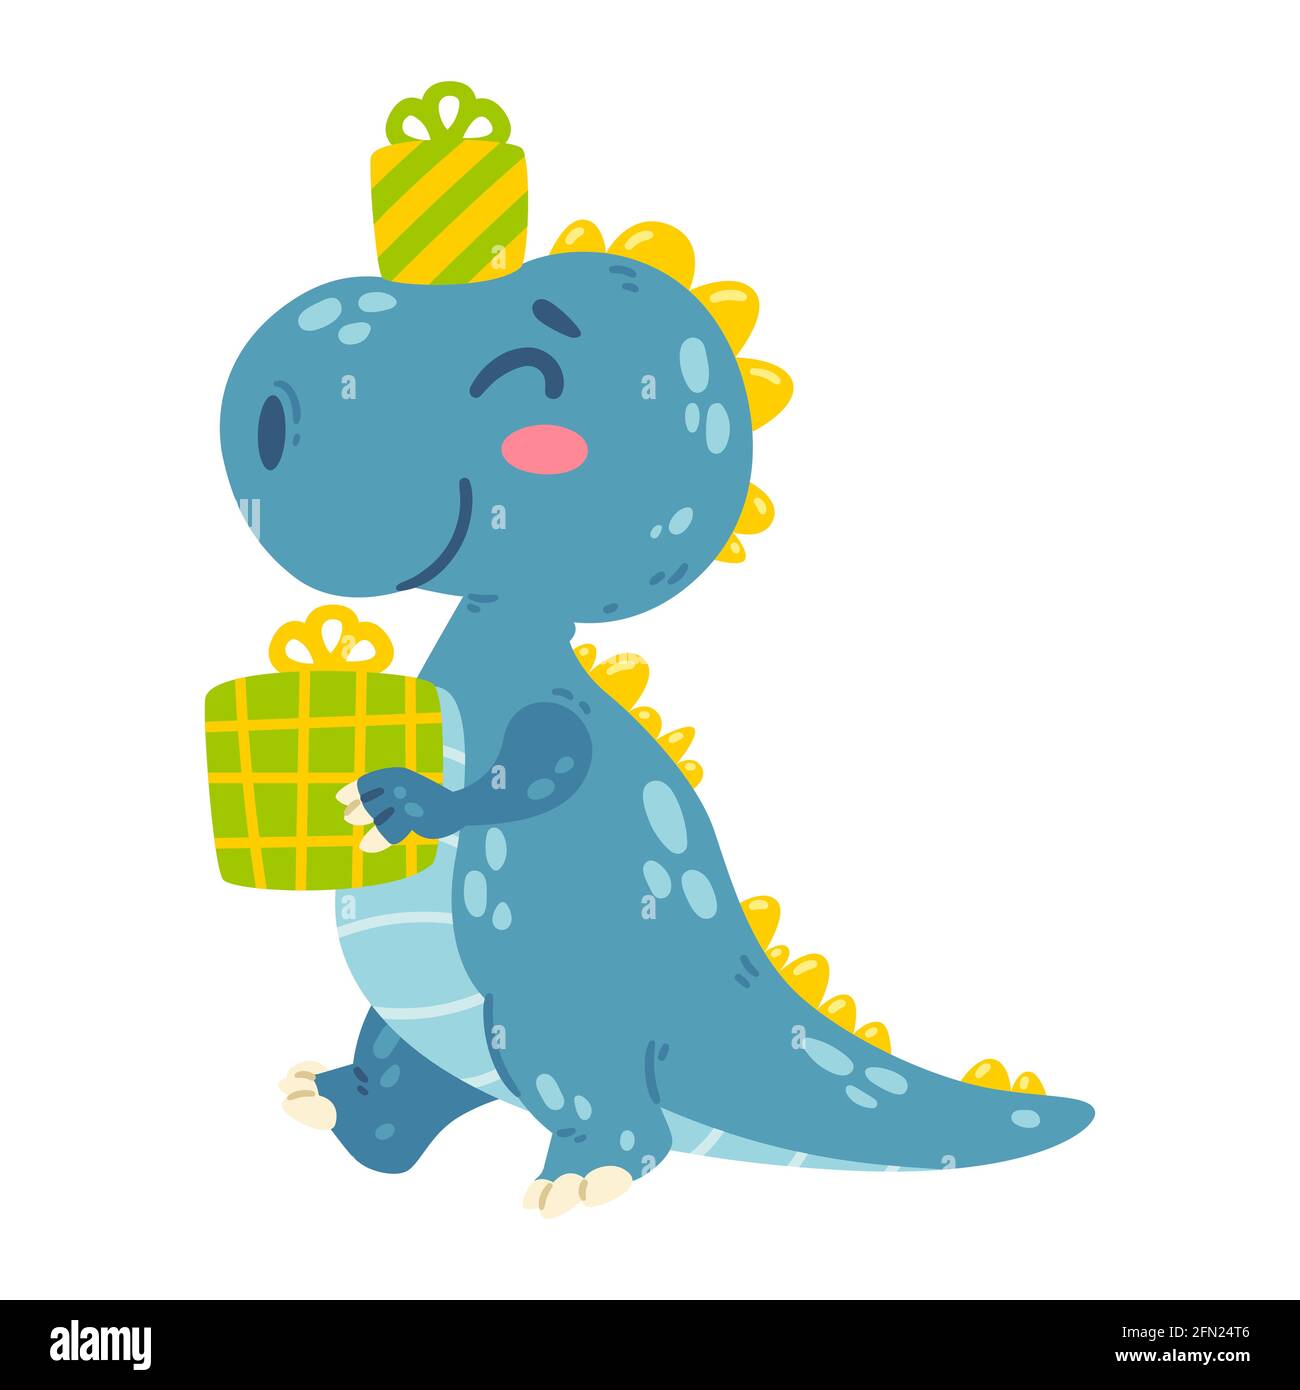 Niedliche kleine Dinosaurier trägt Geschenke. Dragon geht zur Happy Birthday Party mit Geschenken. Charakter für die Gestaltung von Plakaten, Postkarten, Kleidung. P Stock Vektor